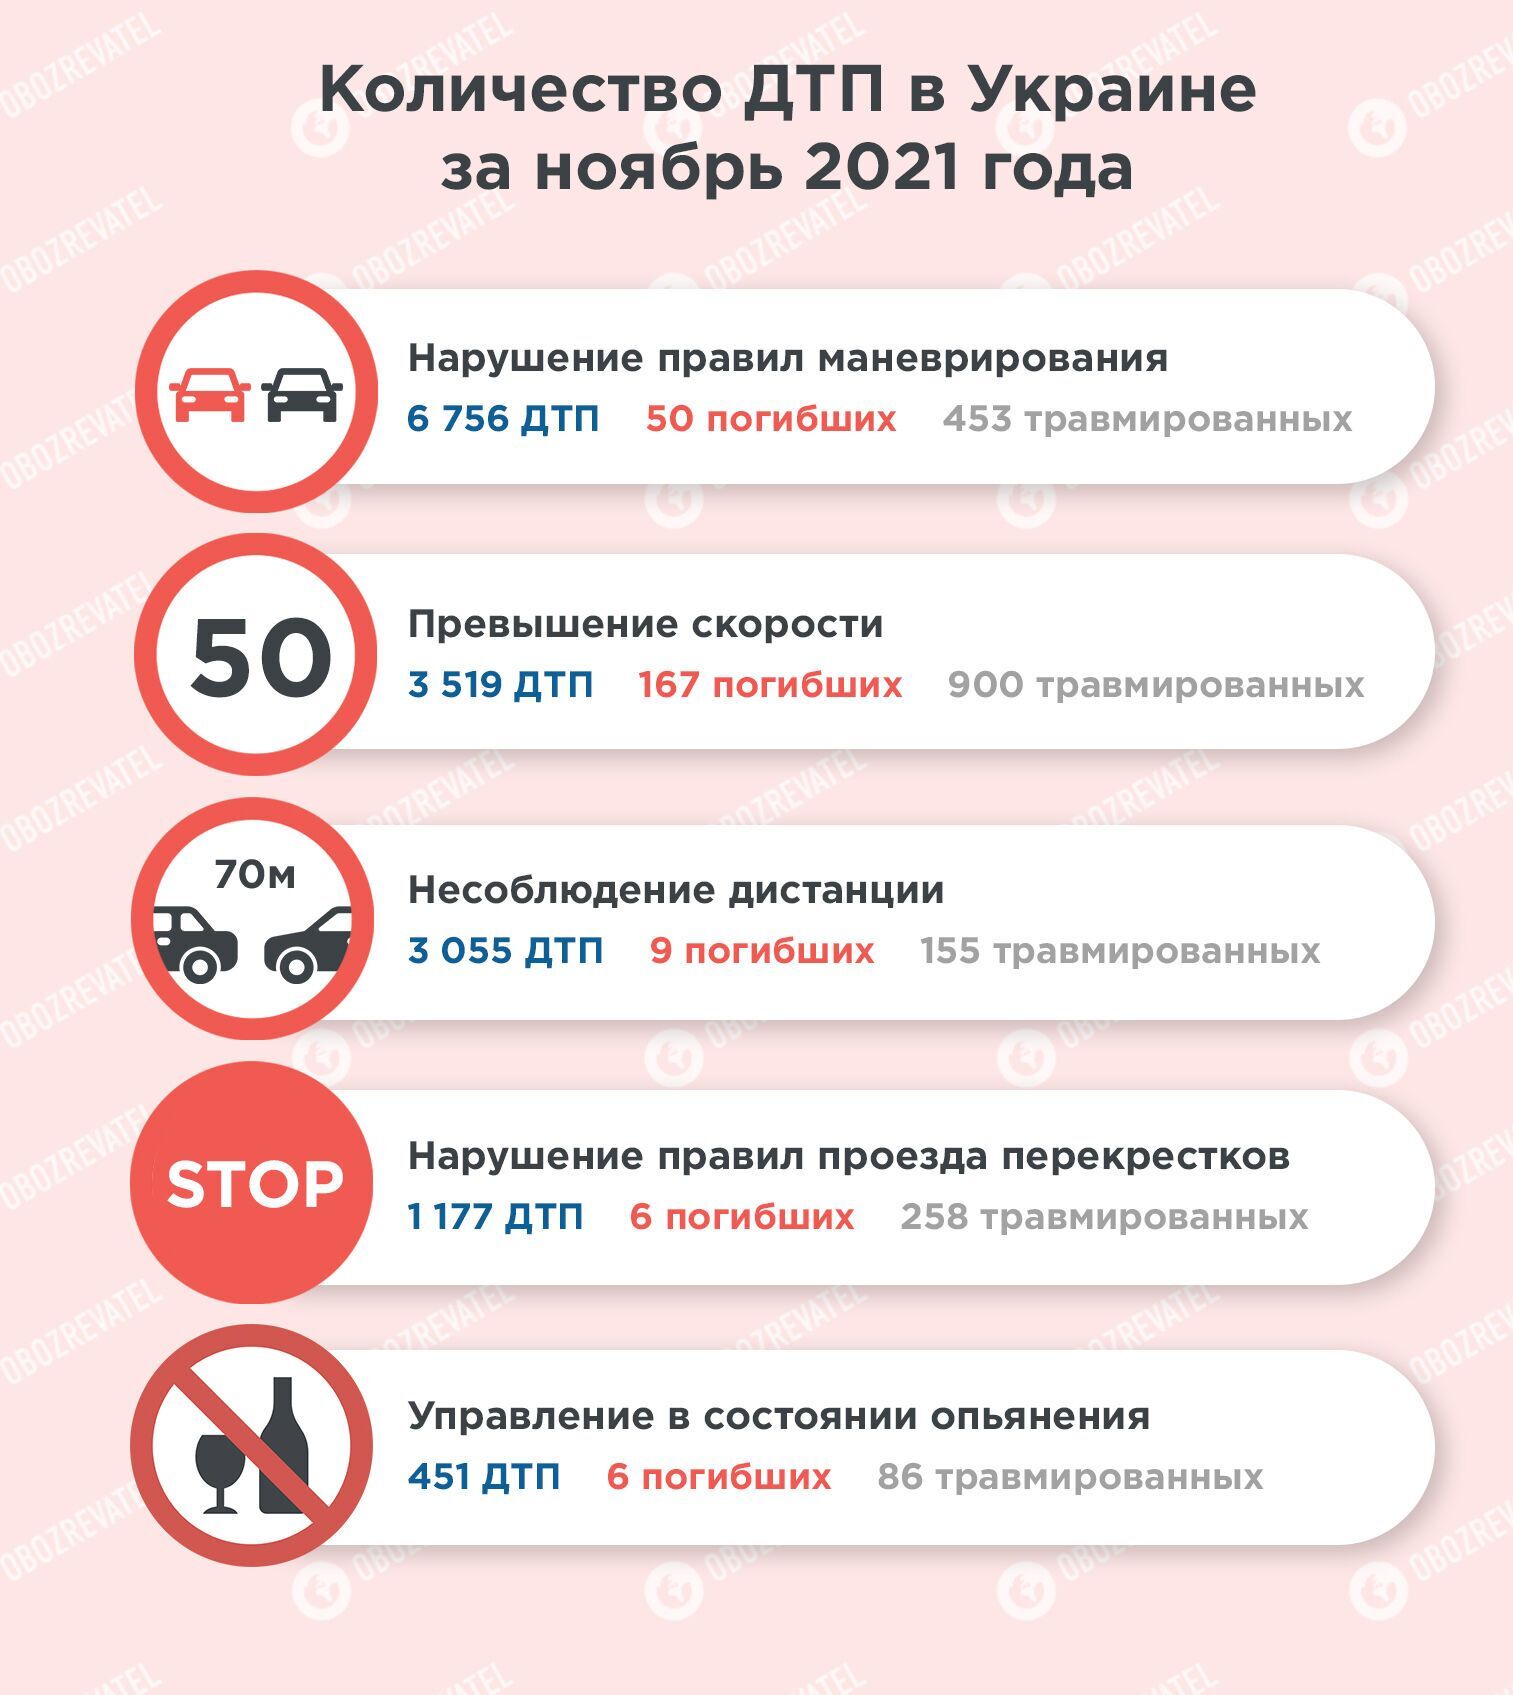 В ноябре 2021 года в Украине ДТП чаще всего происходили из-за нарушения правил маневрирования